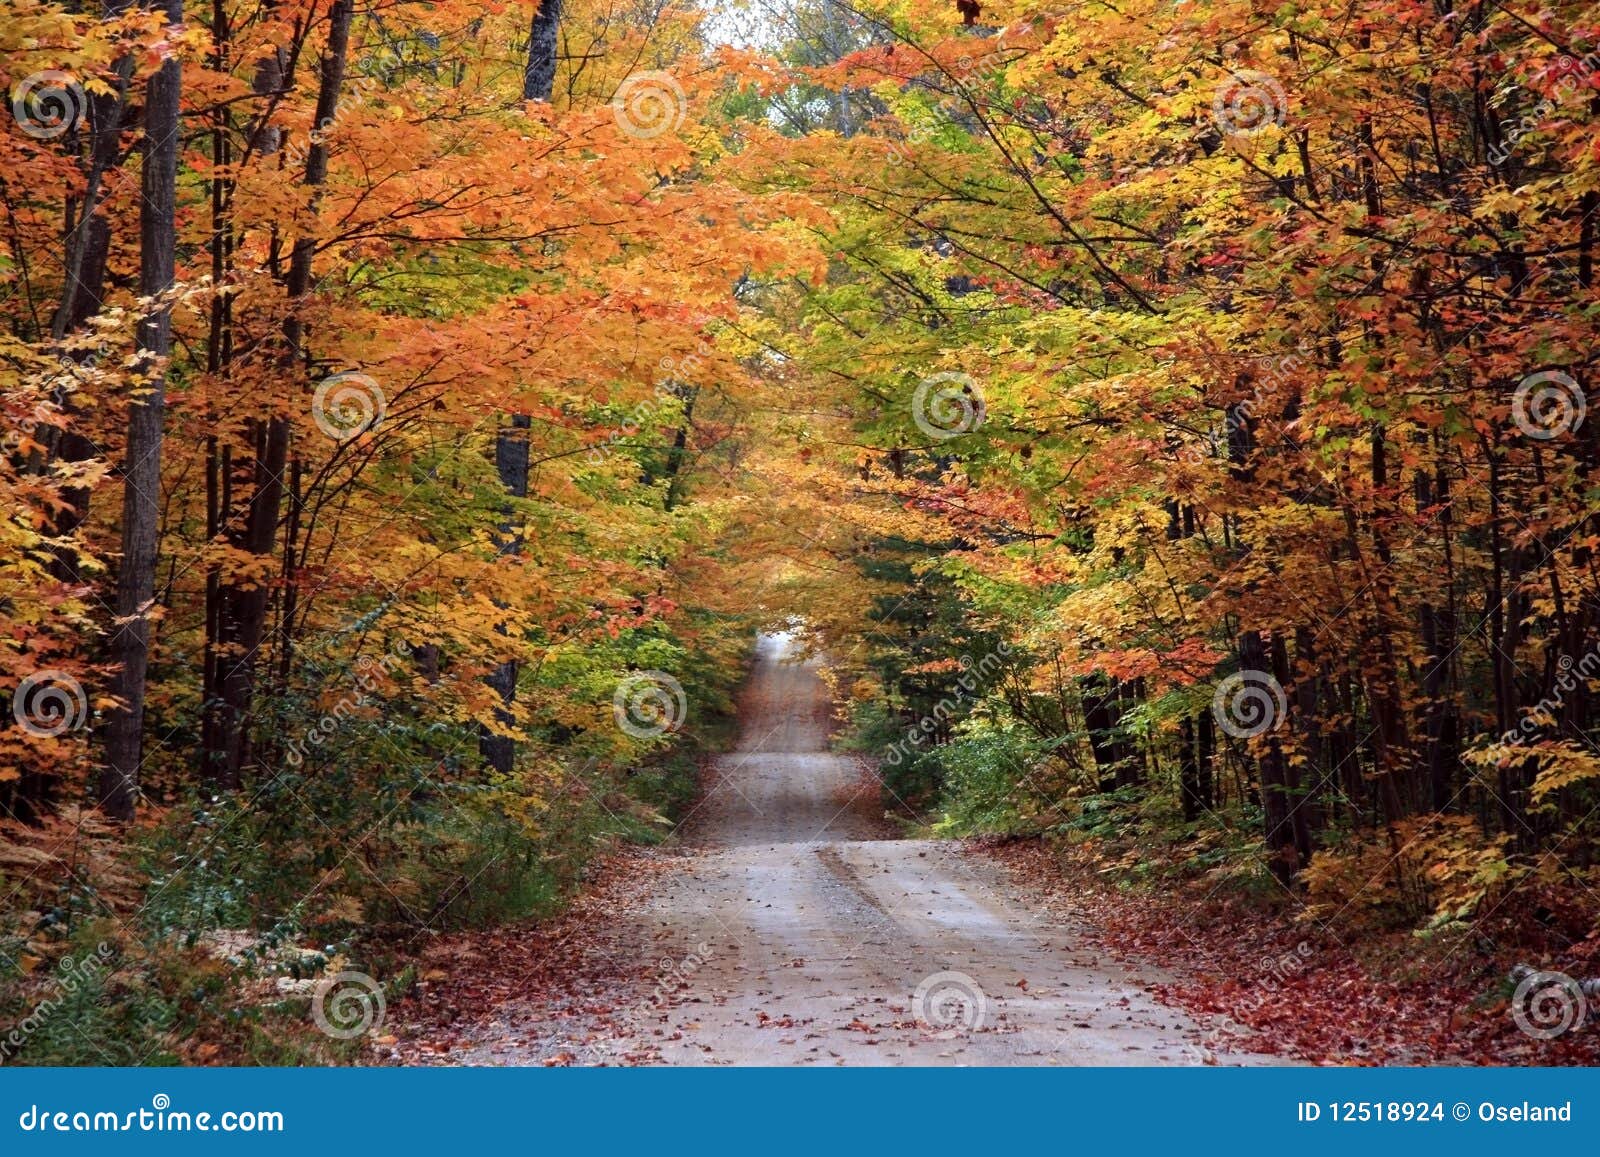 beautiful-fall-color-12518924.jpg